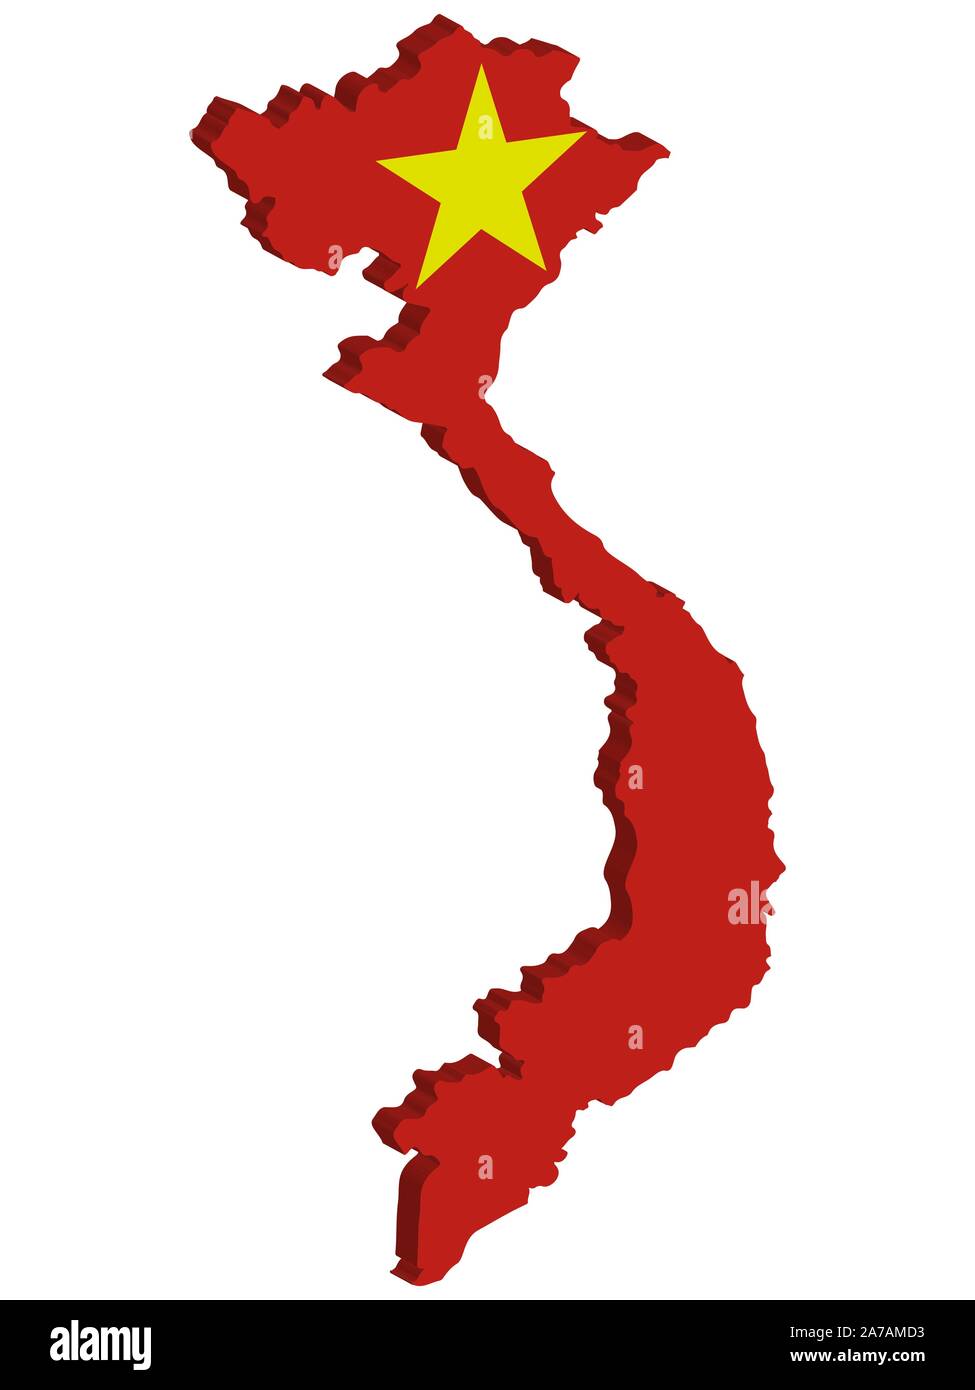 Pavillon 3D Map du Vietnam a officiellement la République socialiste du Vietnam. Illustration vecteur EPS 10. Illustration de Vecteur